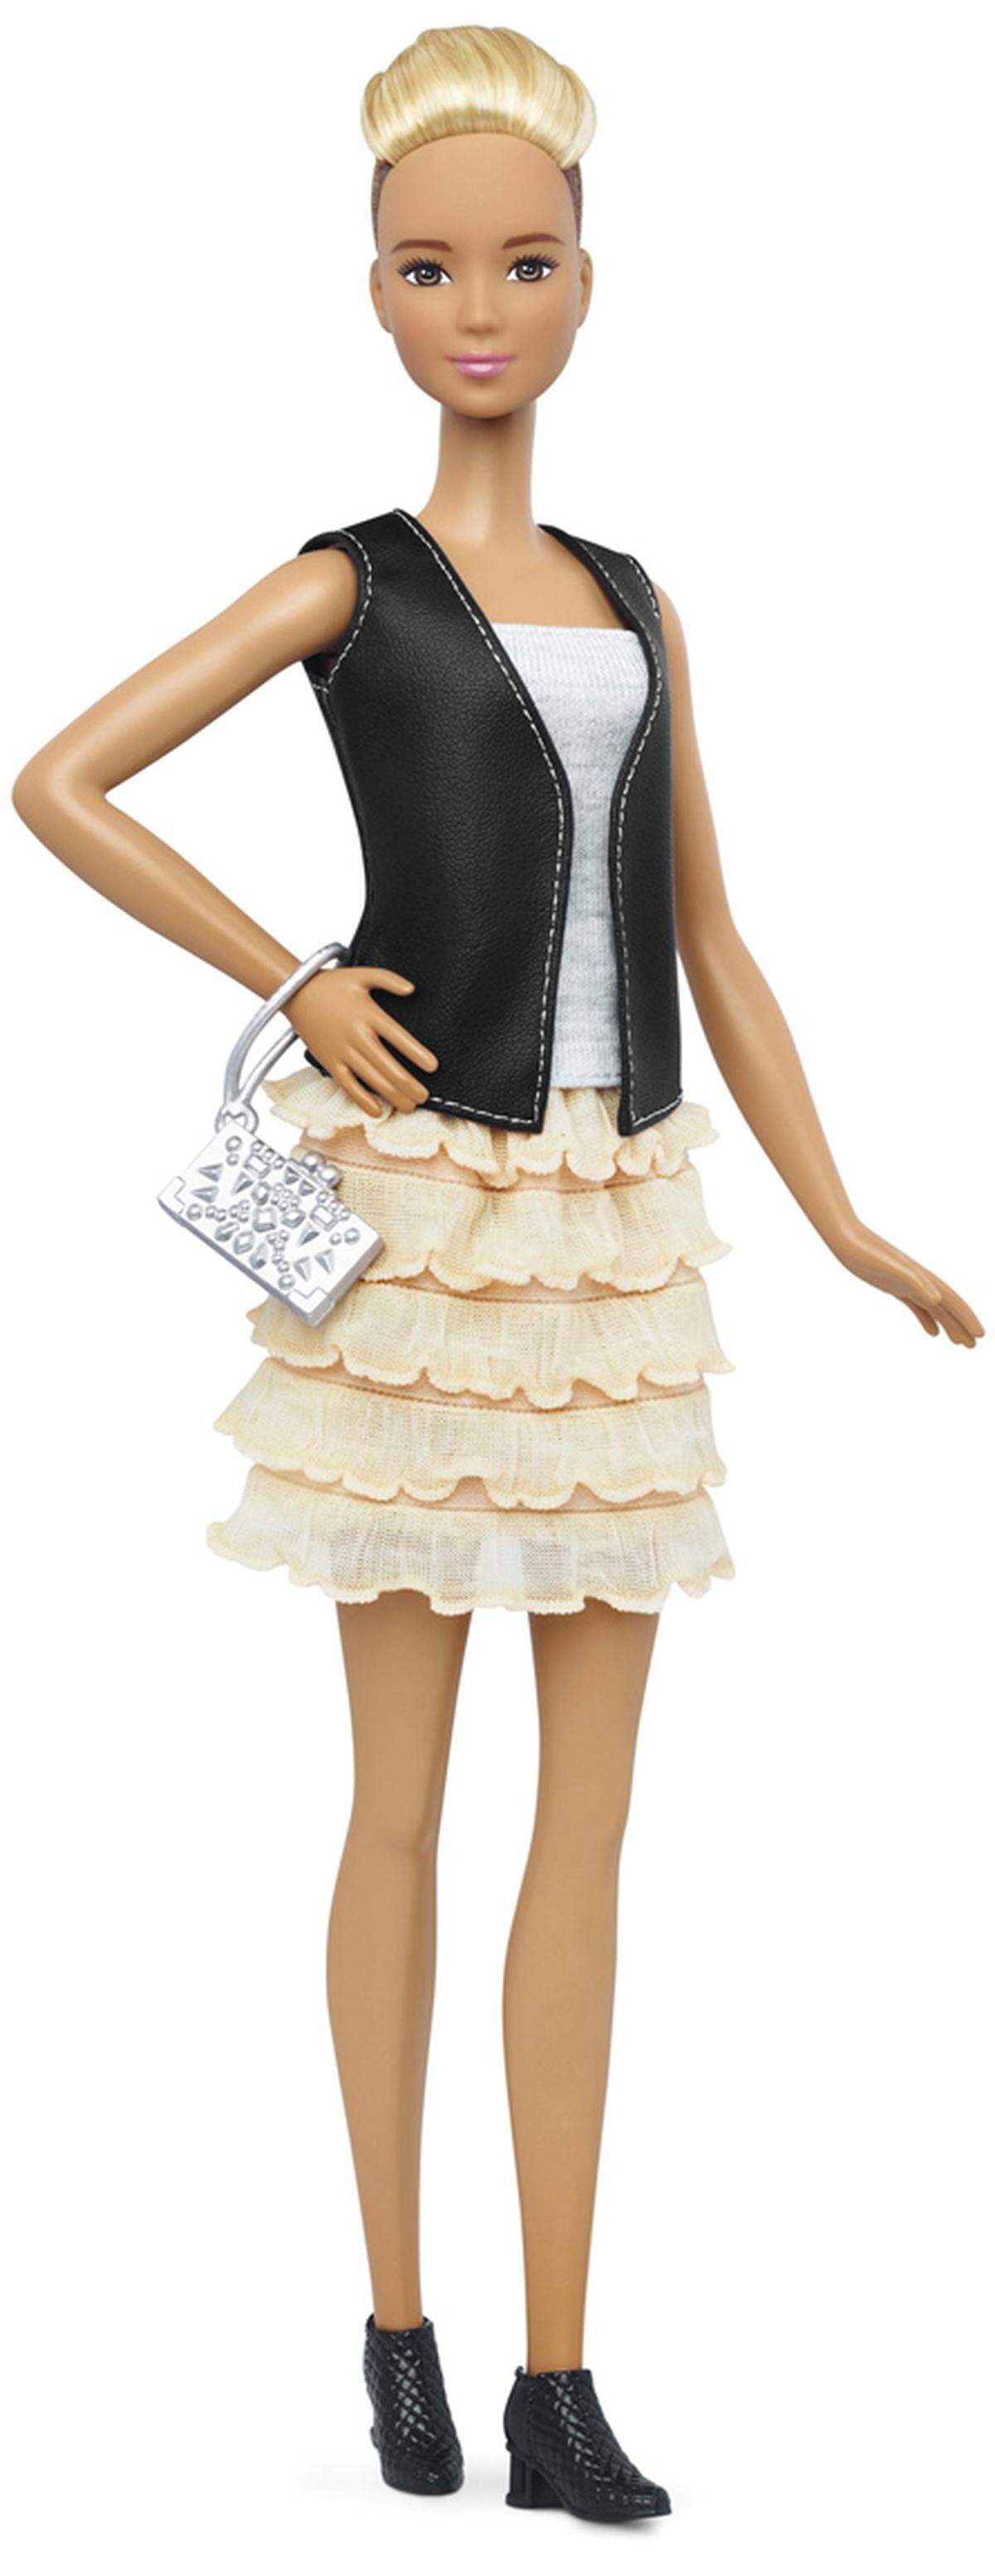 Es blieb also offen, ob diese Erweiterung des Barbie-Repertoires die Marke stärkt oder ob die - von kritischen Eltern lang geforderte - Abkehr vom surrealen Körperbau der Original-Barbie zu spät kommt.  